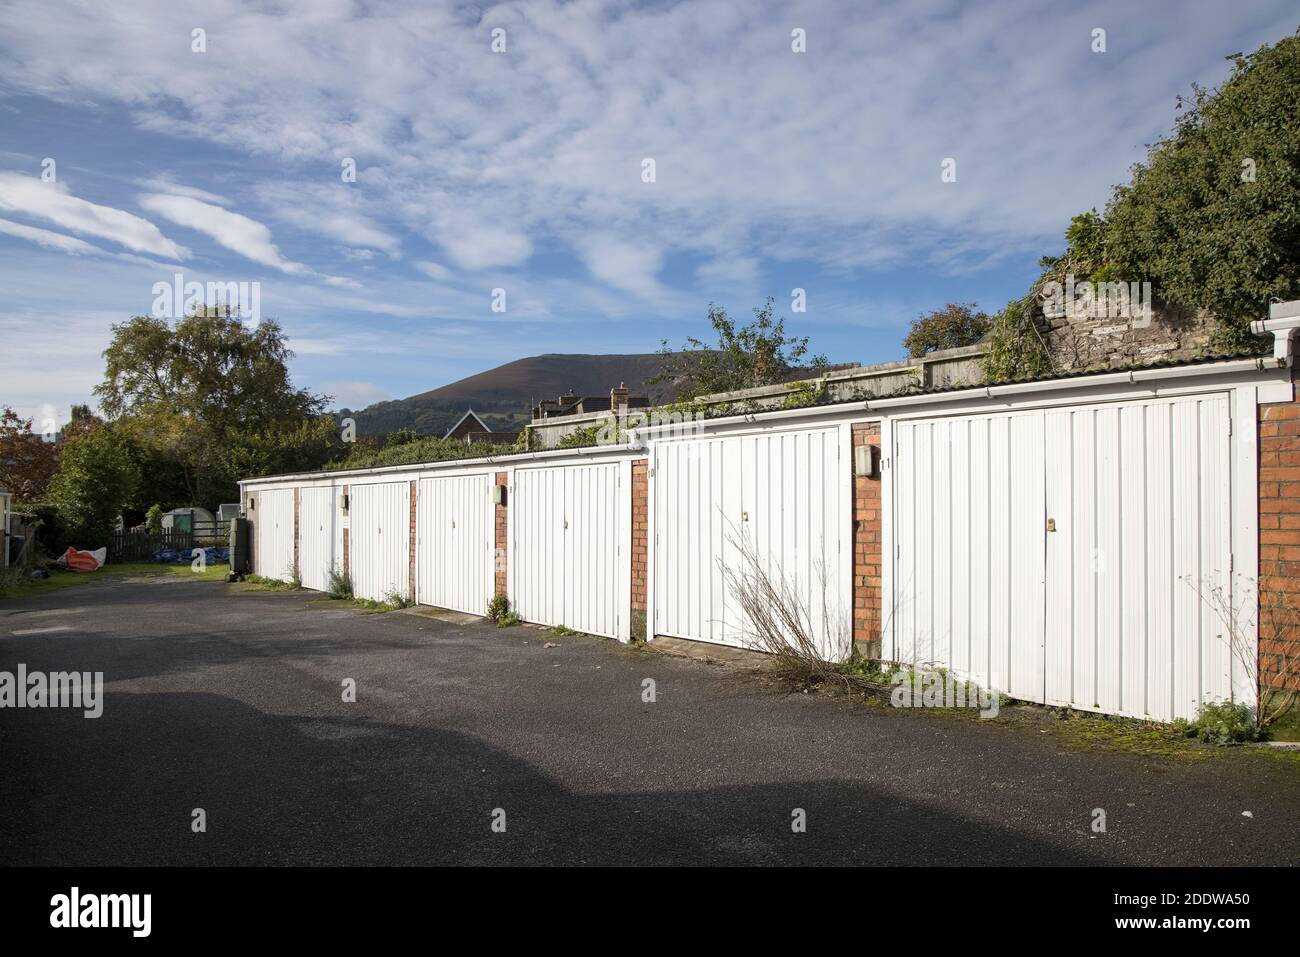 Row of garages, Abergavenny, Wales, UK Stock Photo